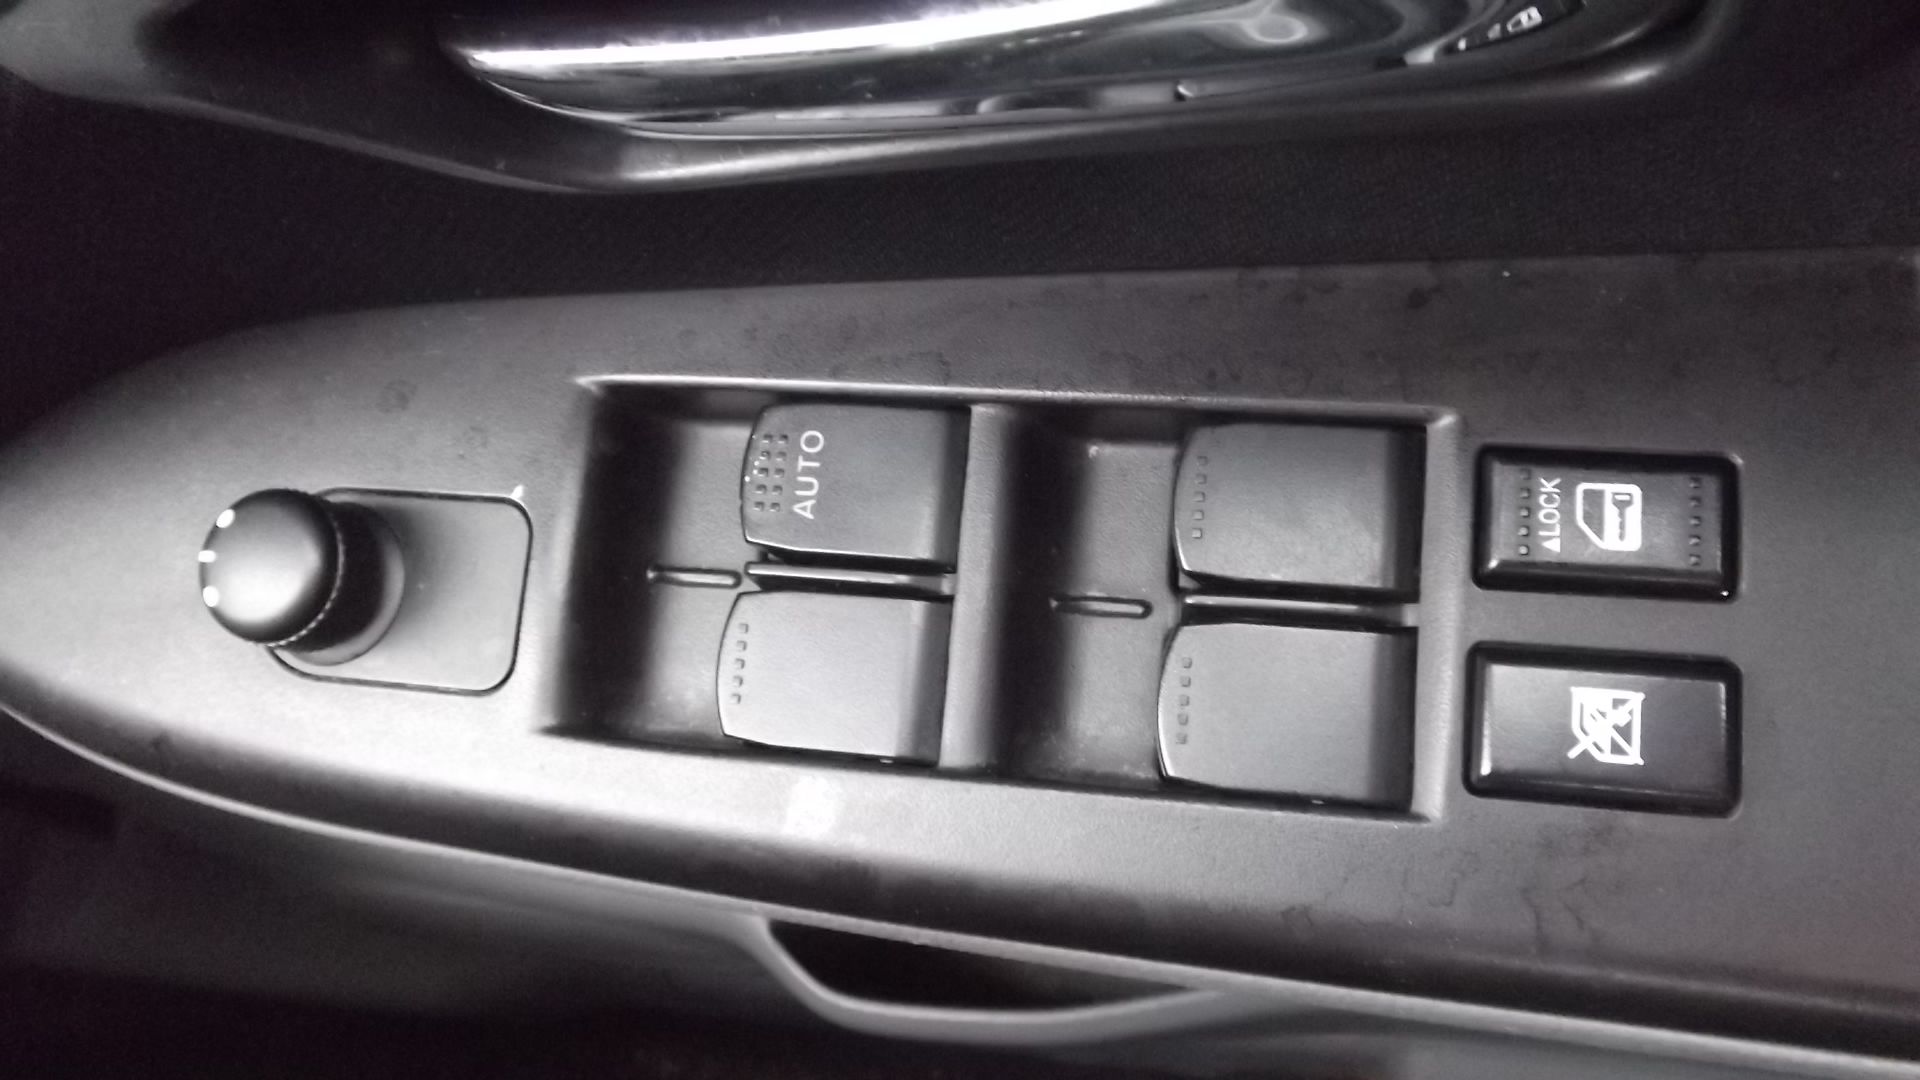 2010 Suzuki SX4 1.6 Sz4 5 Door Hatchback - Image 8 of 14